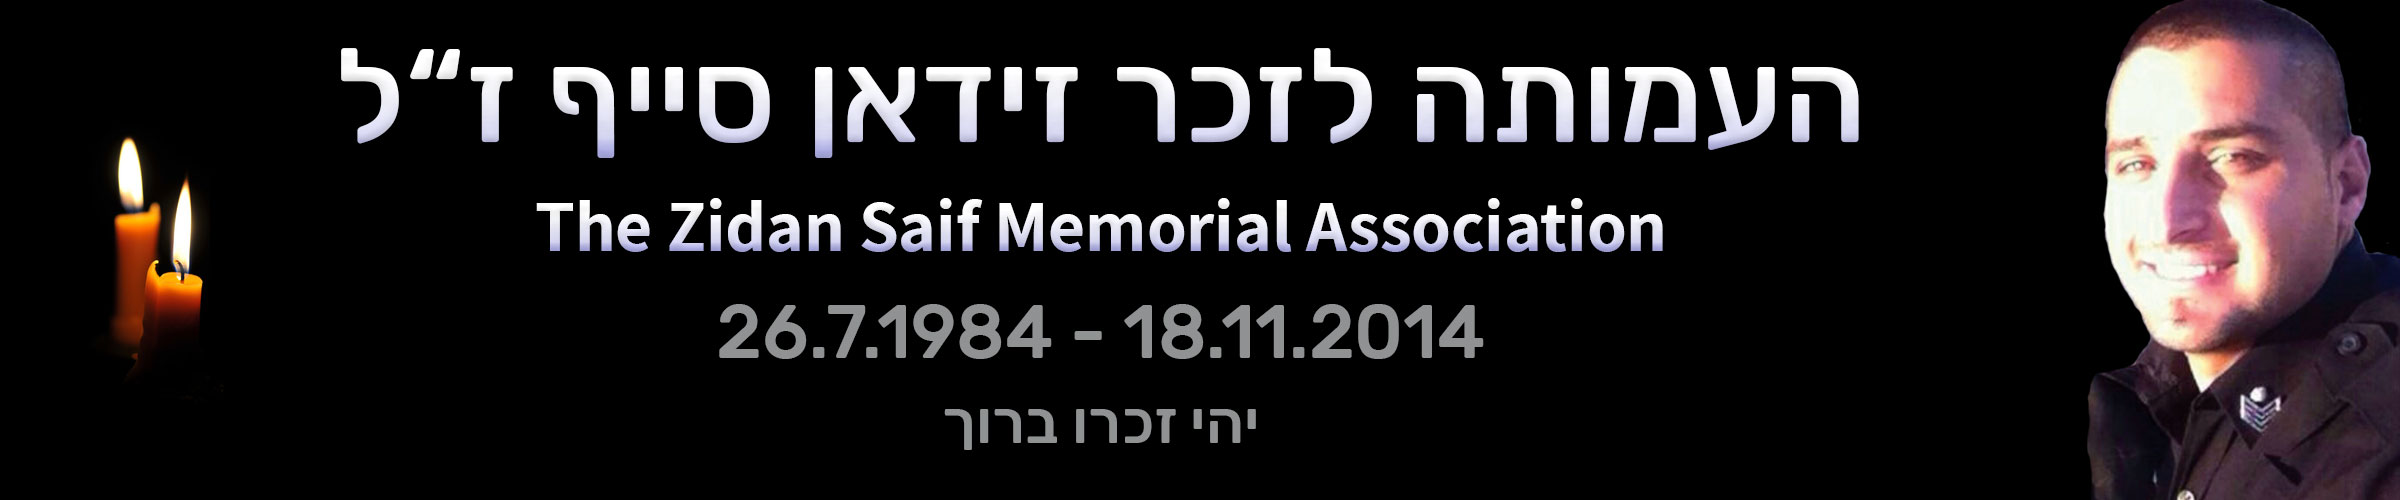 העמותה לזכר זידאן סייף ז"ל 18.11.2014 - 26.7.1984